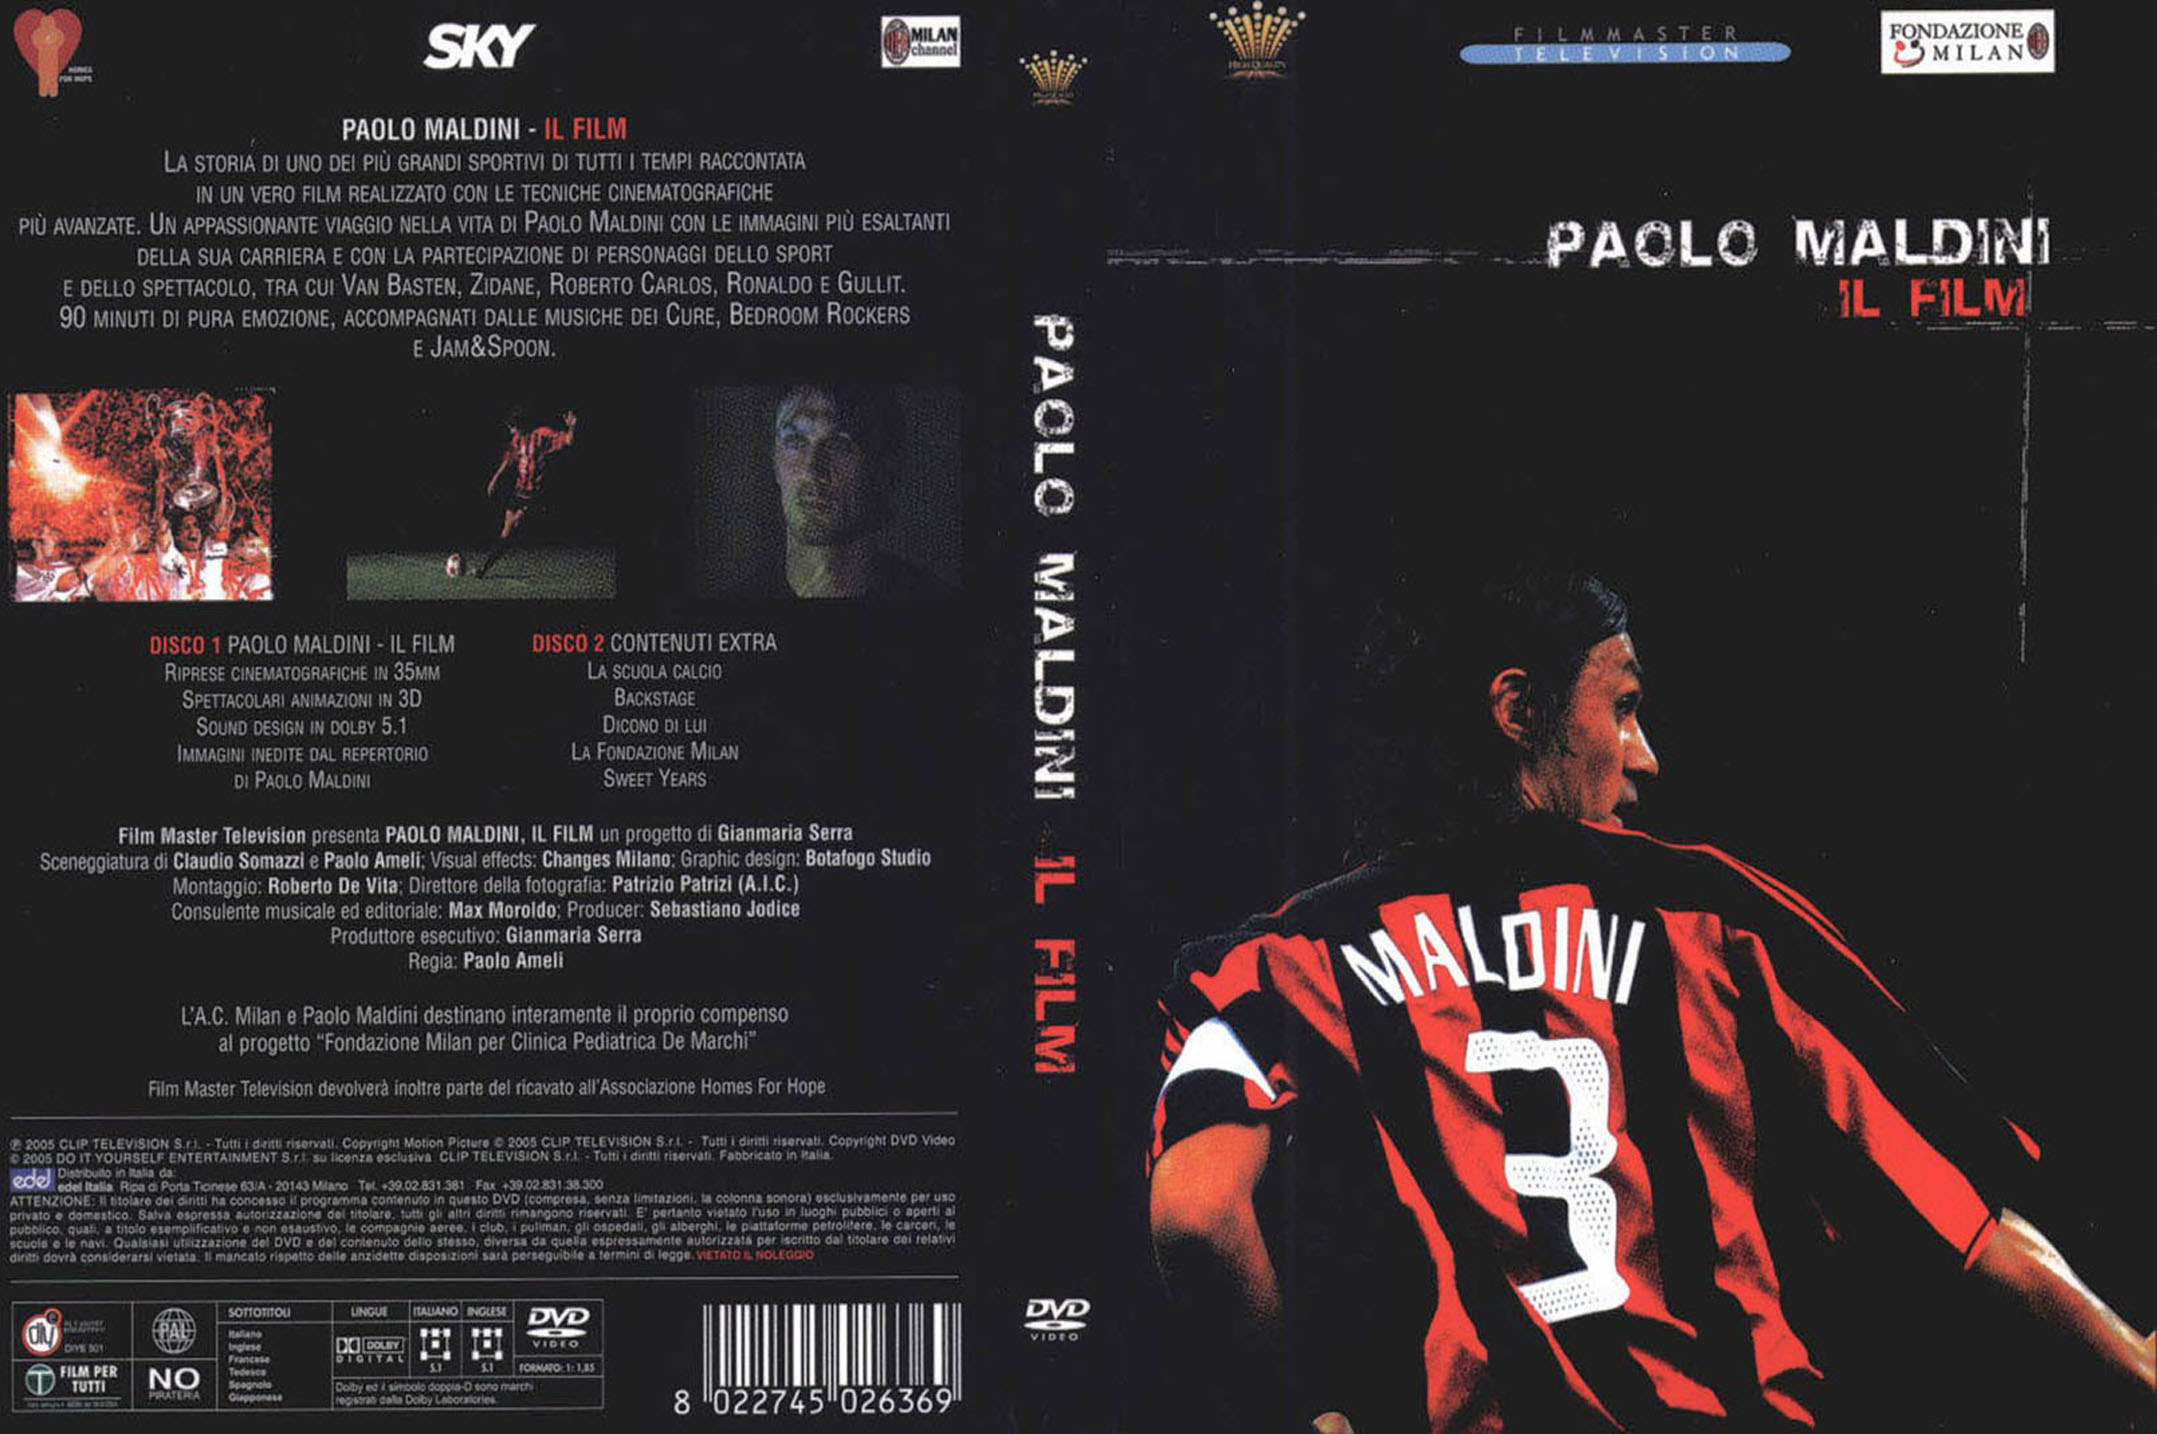 Jaquette DVD Paolo Maldini Il Film